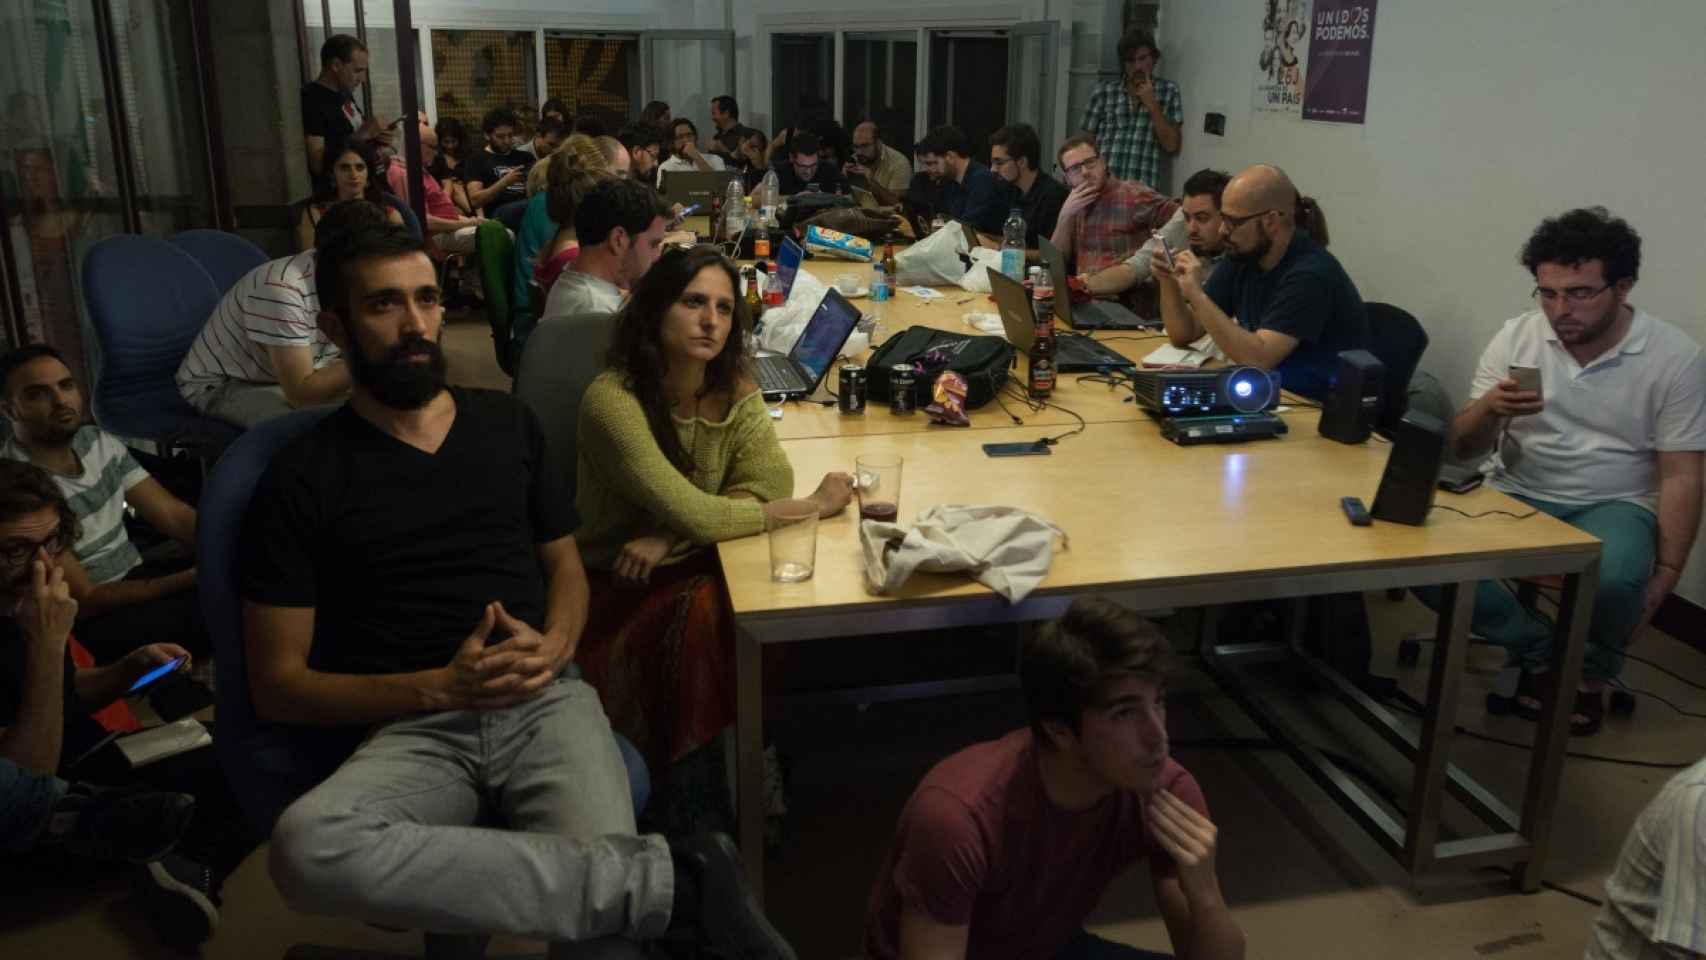 La noche del debate en la sala de máquinas de La Morada.